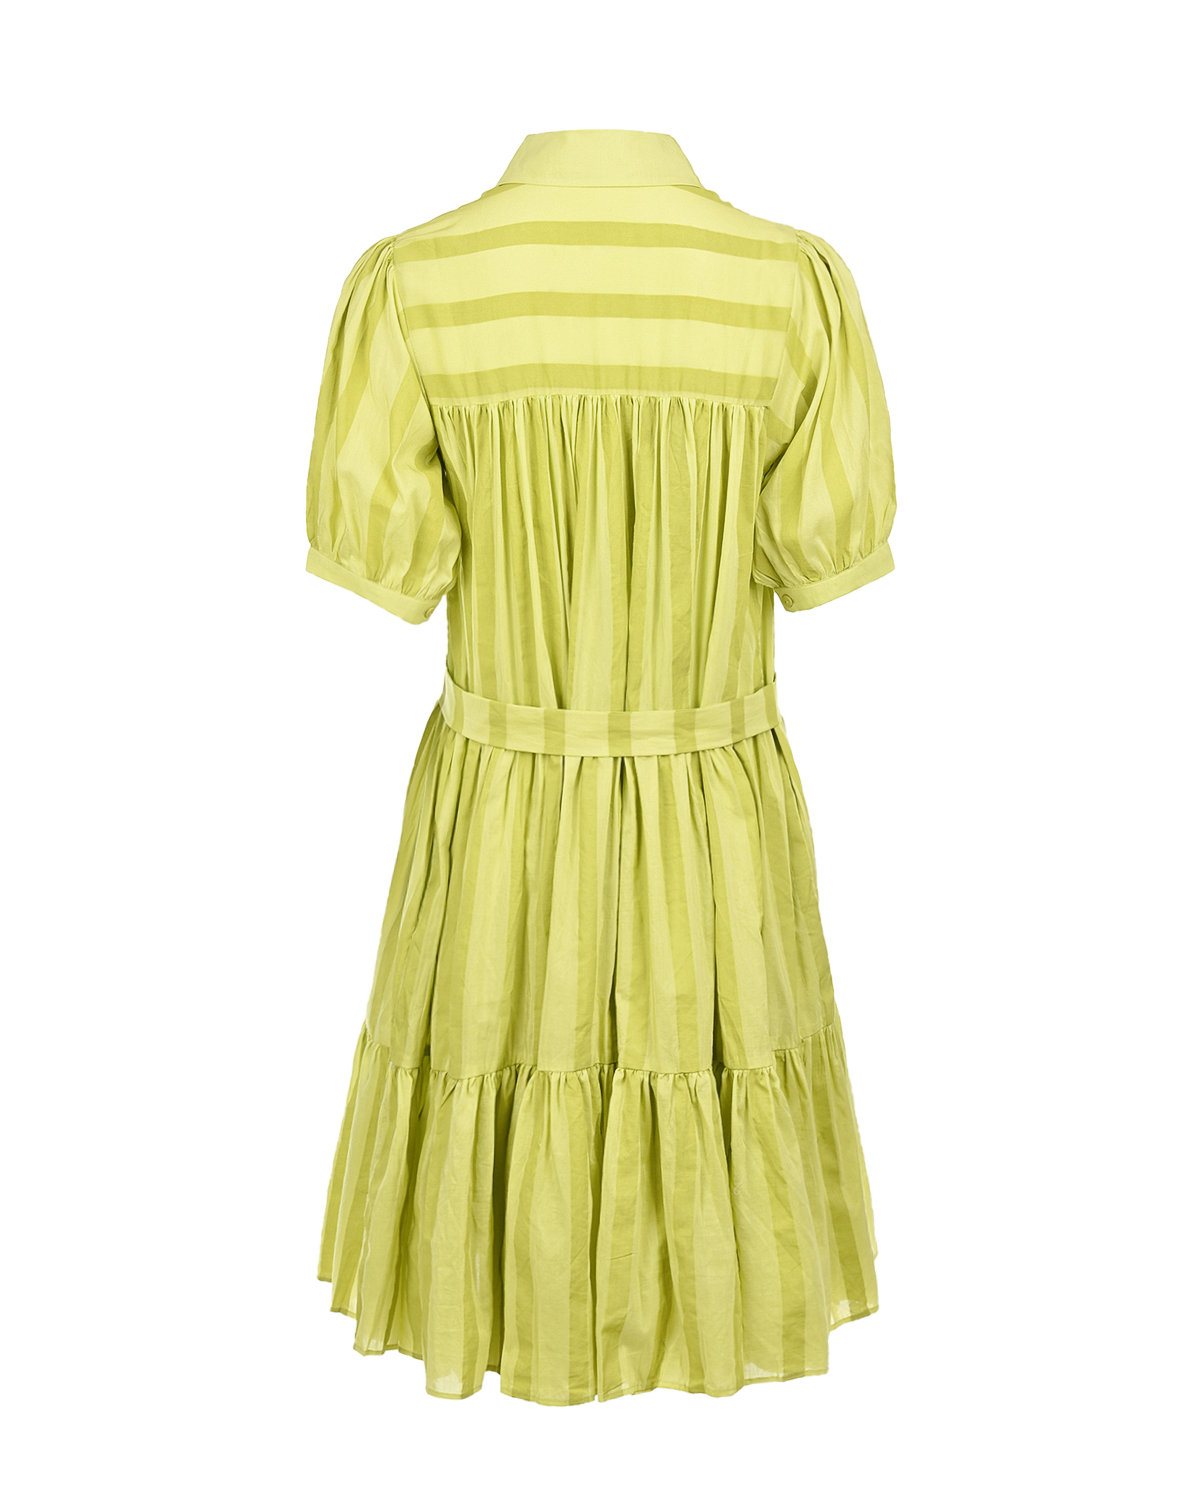 Платье лимонного цвета в полоску LOVE BIRDS, размер 40 - фото 5